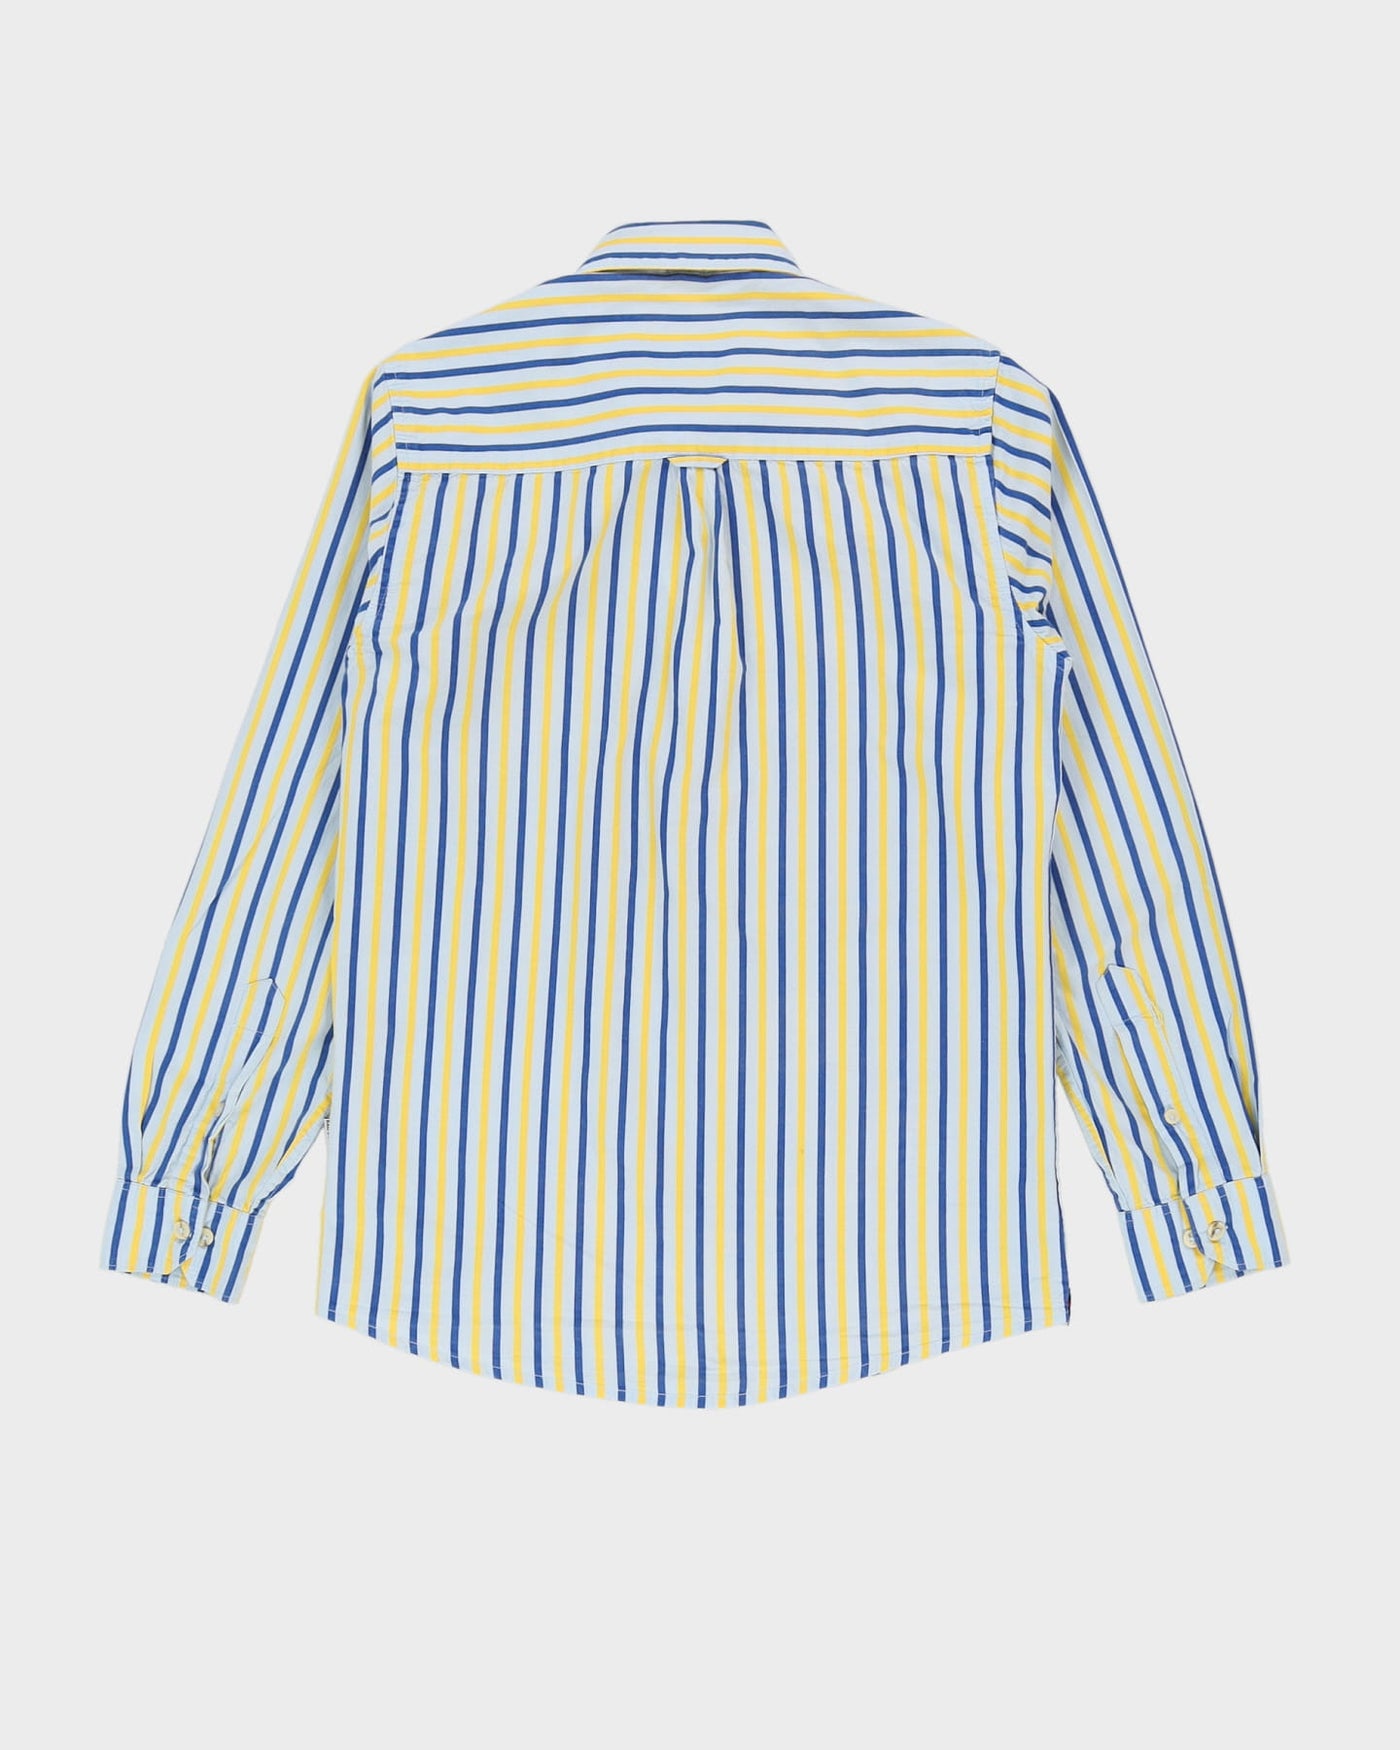 Ralph Lauren RRL Blue / Yellow Striped Long-Sleeve Shirt - M